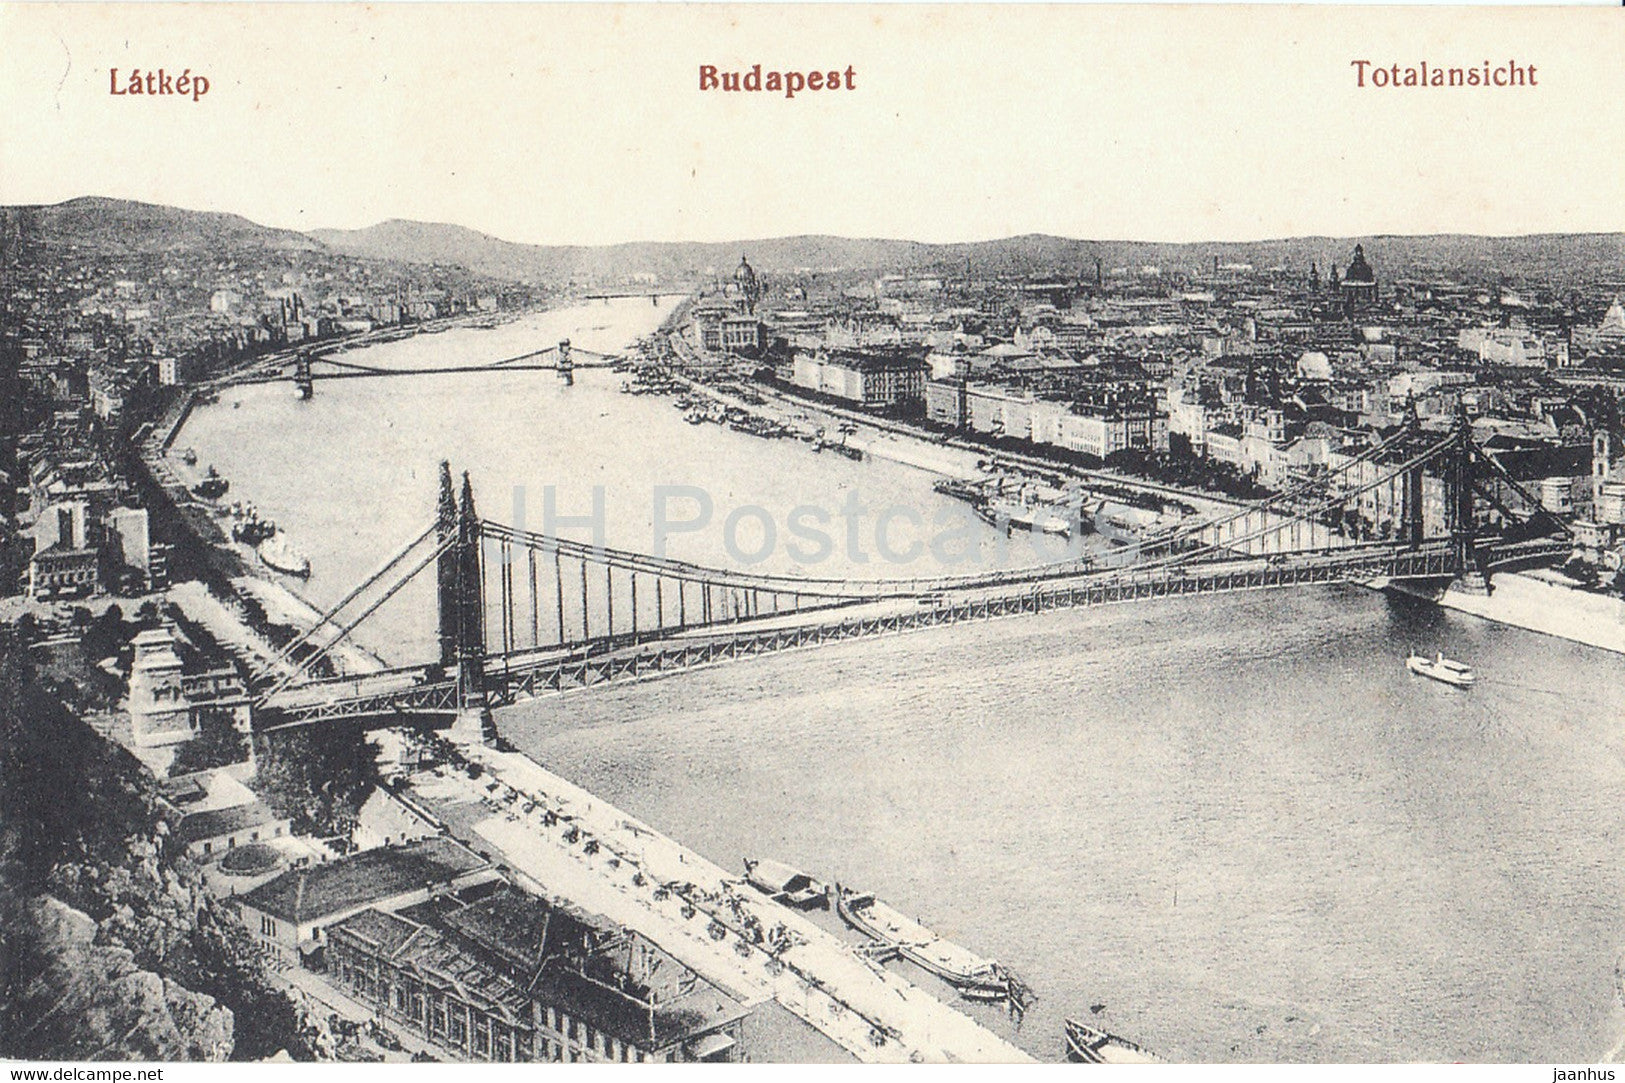 Budapest - Latkep - Totalansicht - bridge - old postcard - Hungary - unused - JH Postcards